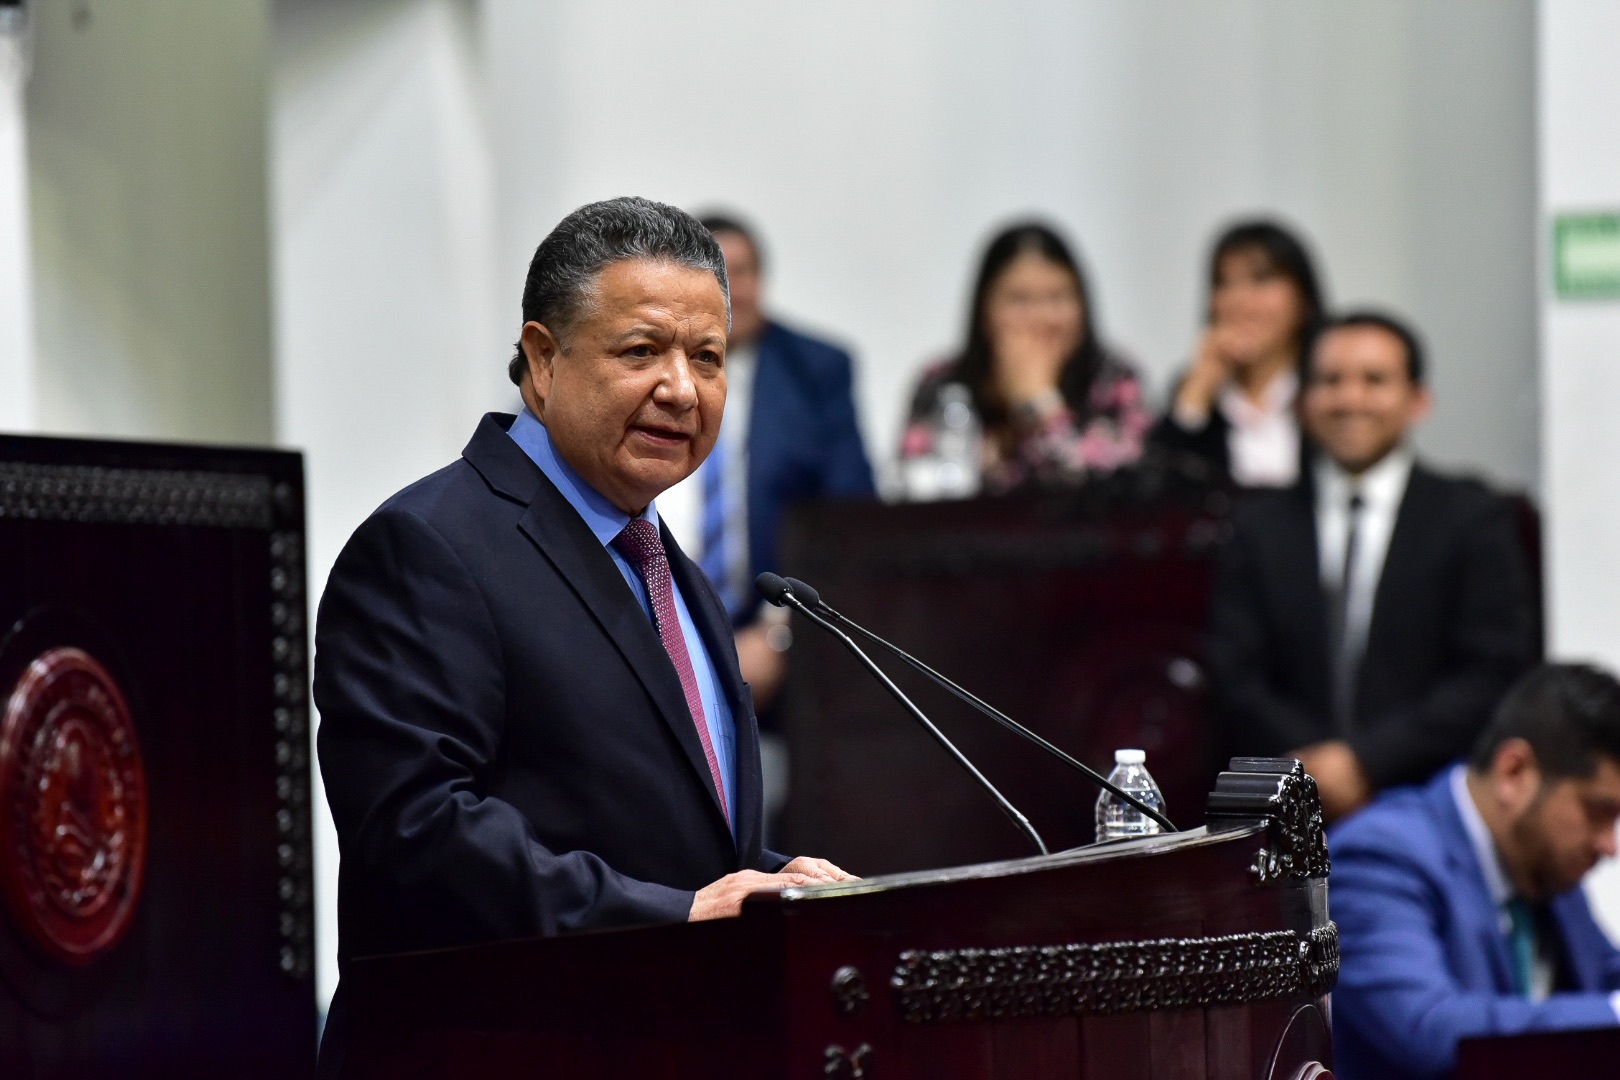 Avanza agenda legislativa propuesta por Menchaca Salazar